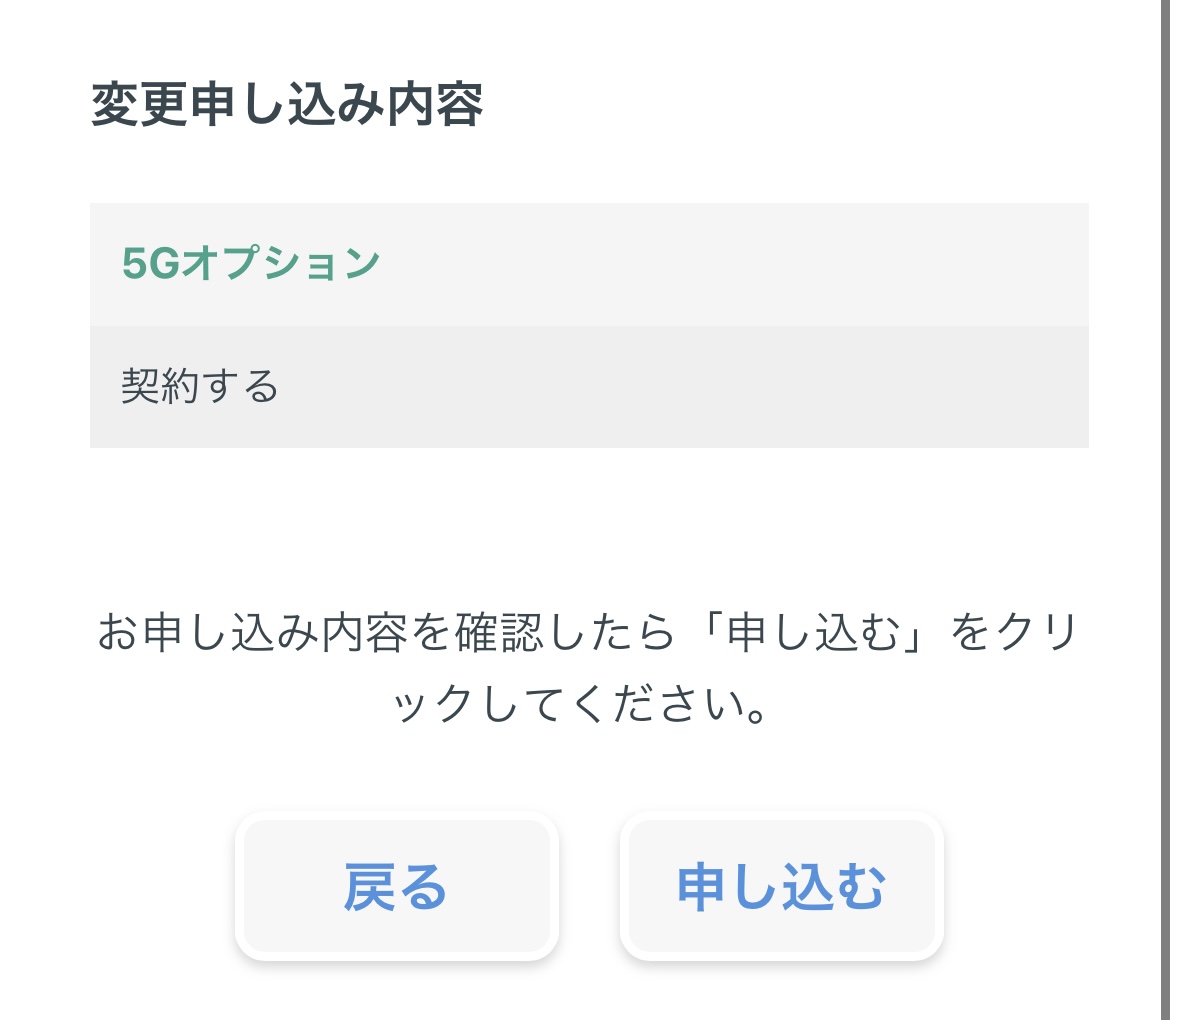 日本通信SIM5Gオプション申込確認画面